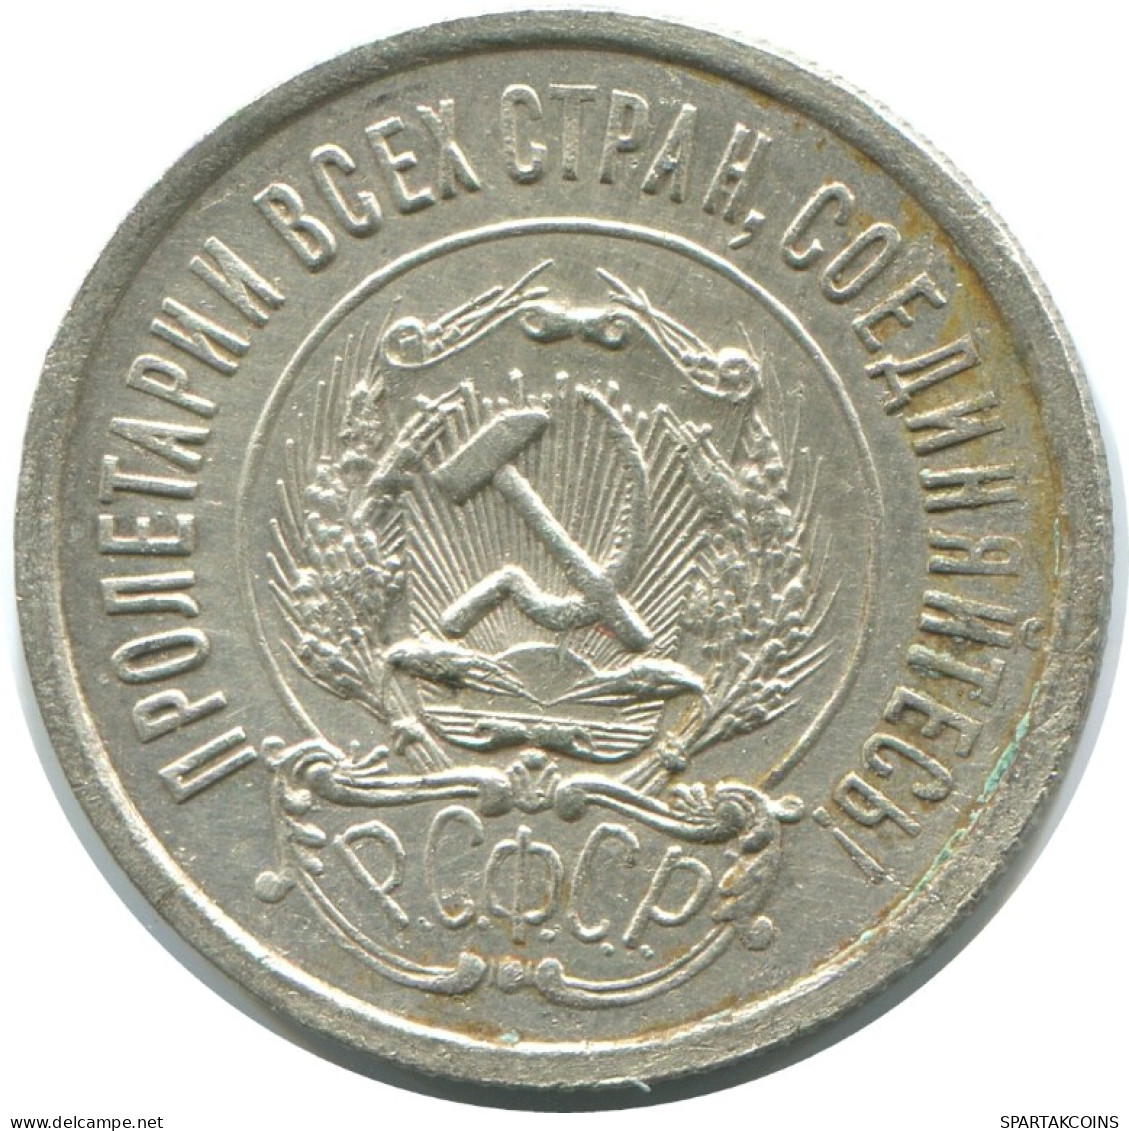 20 KOPEKS 1923 RUSSLAND RUSSIA RSFSR SILBER Münze HIGH GRADE #AF547.4.D.A - Rusia